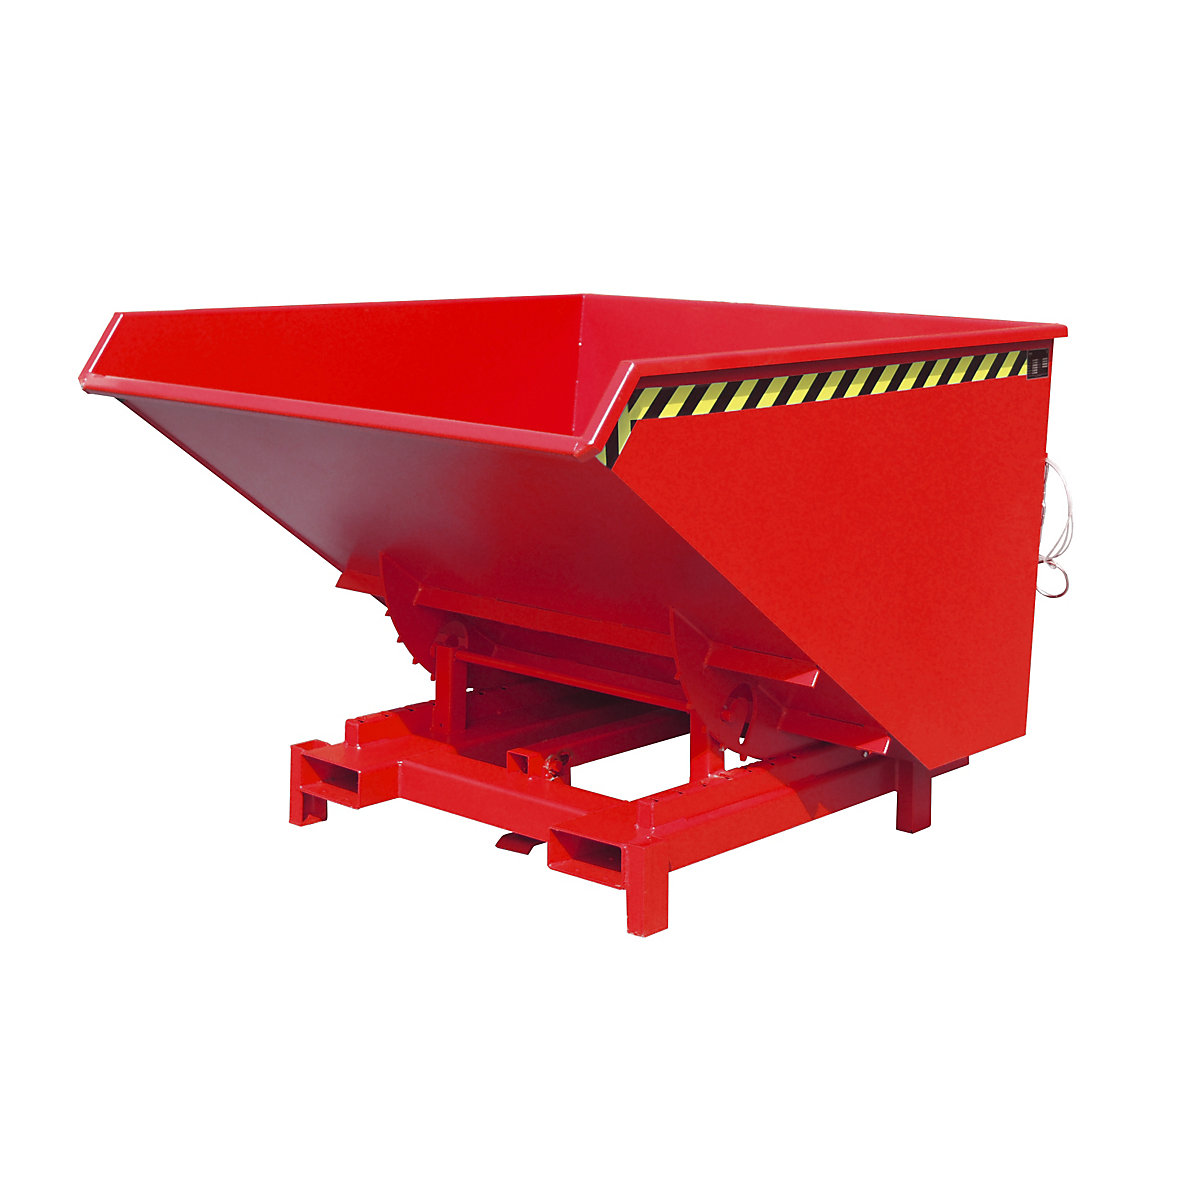 Prekucna posoda za velike obremenitve – eurokraft pro, prostornina 1,7 m³, nosilnost 4000 kg, rdeča RAL 3000-11